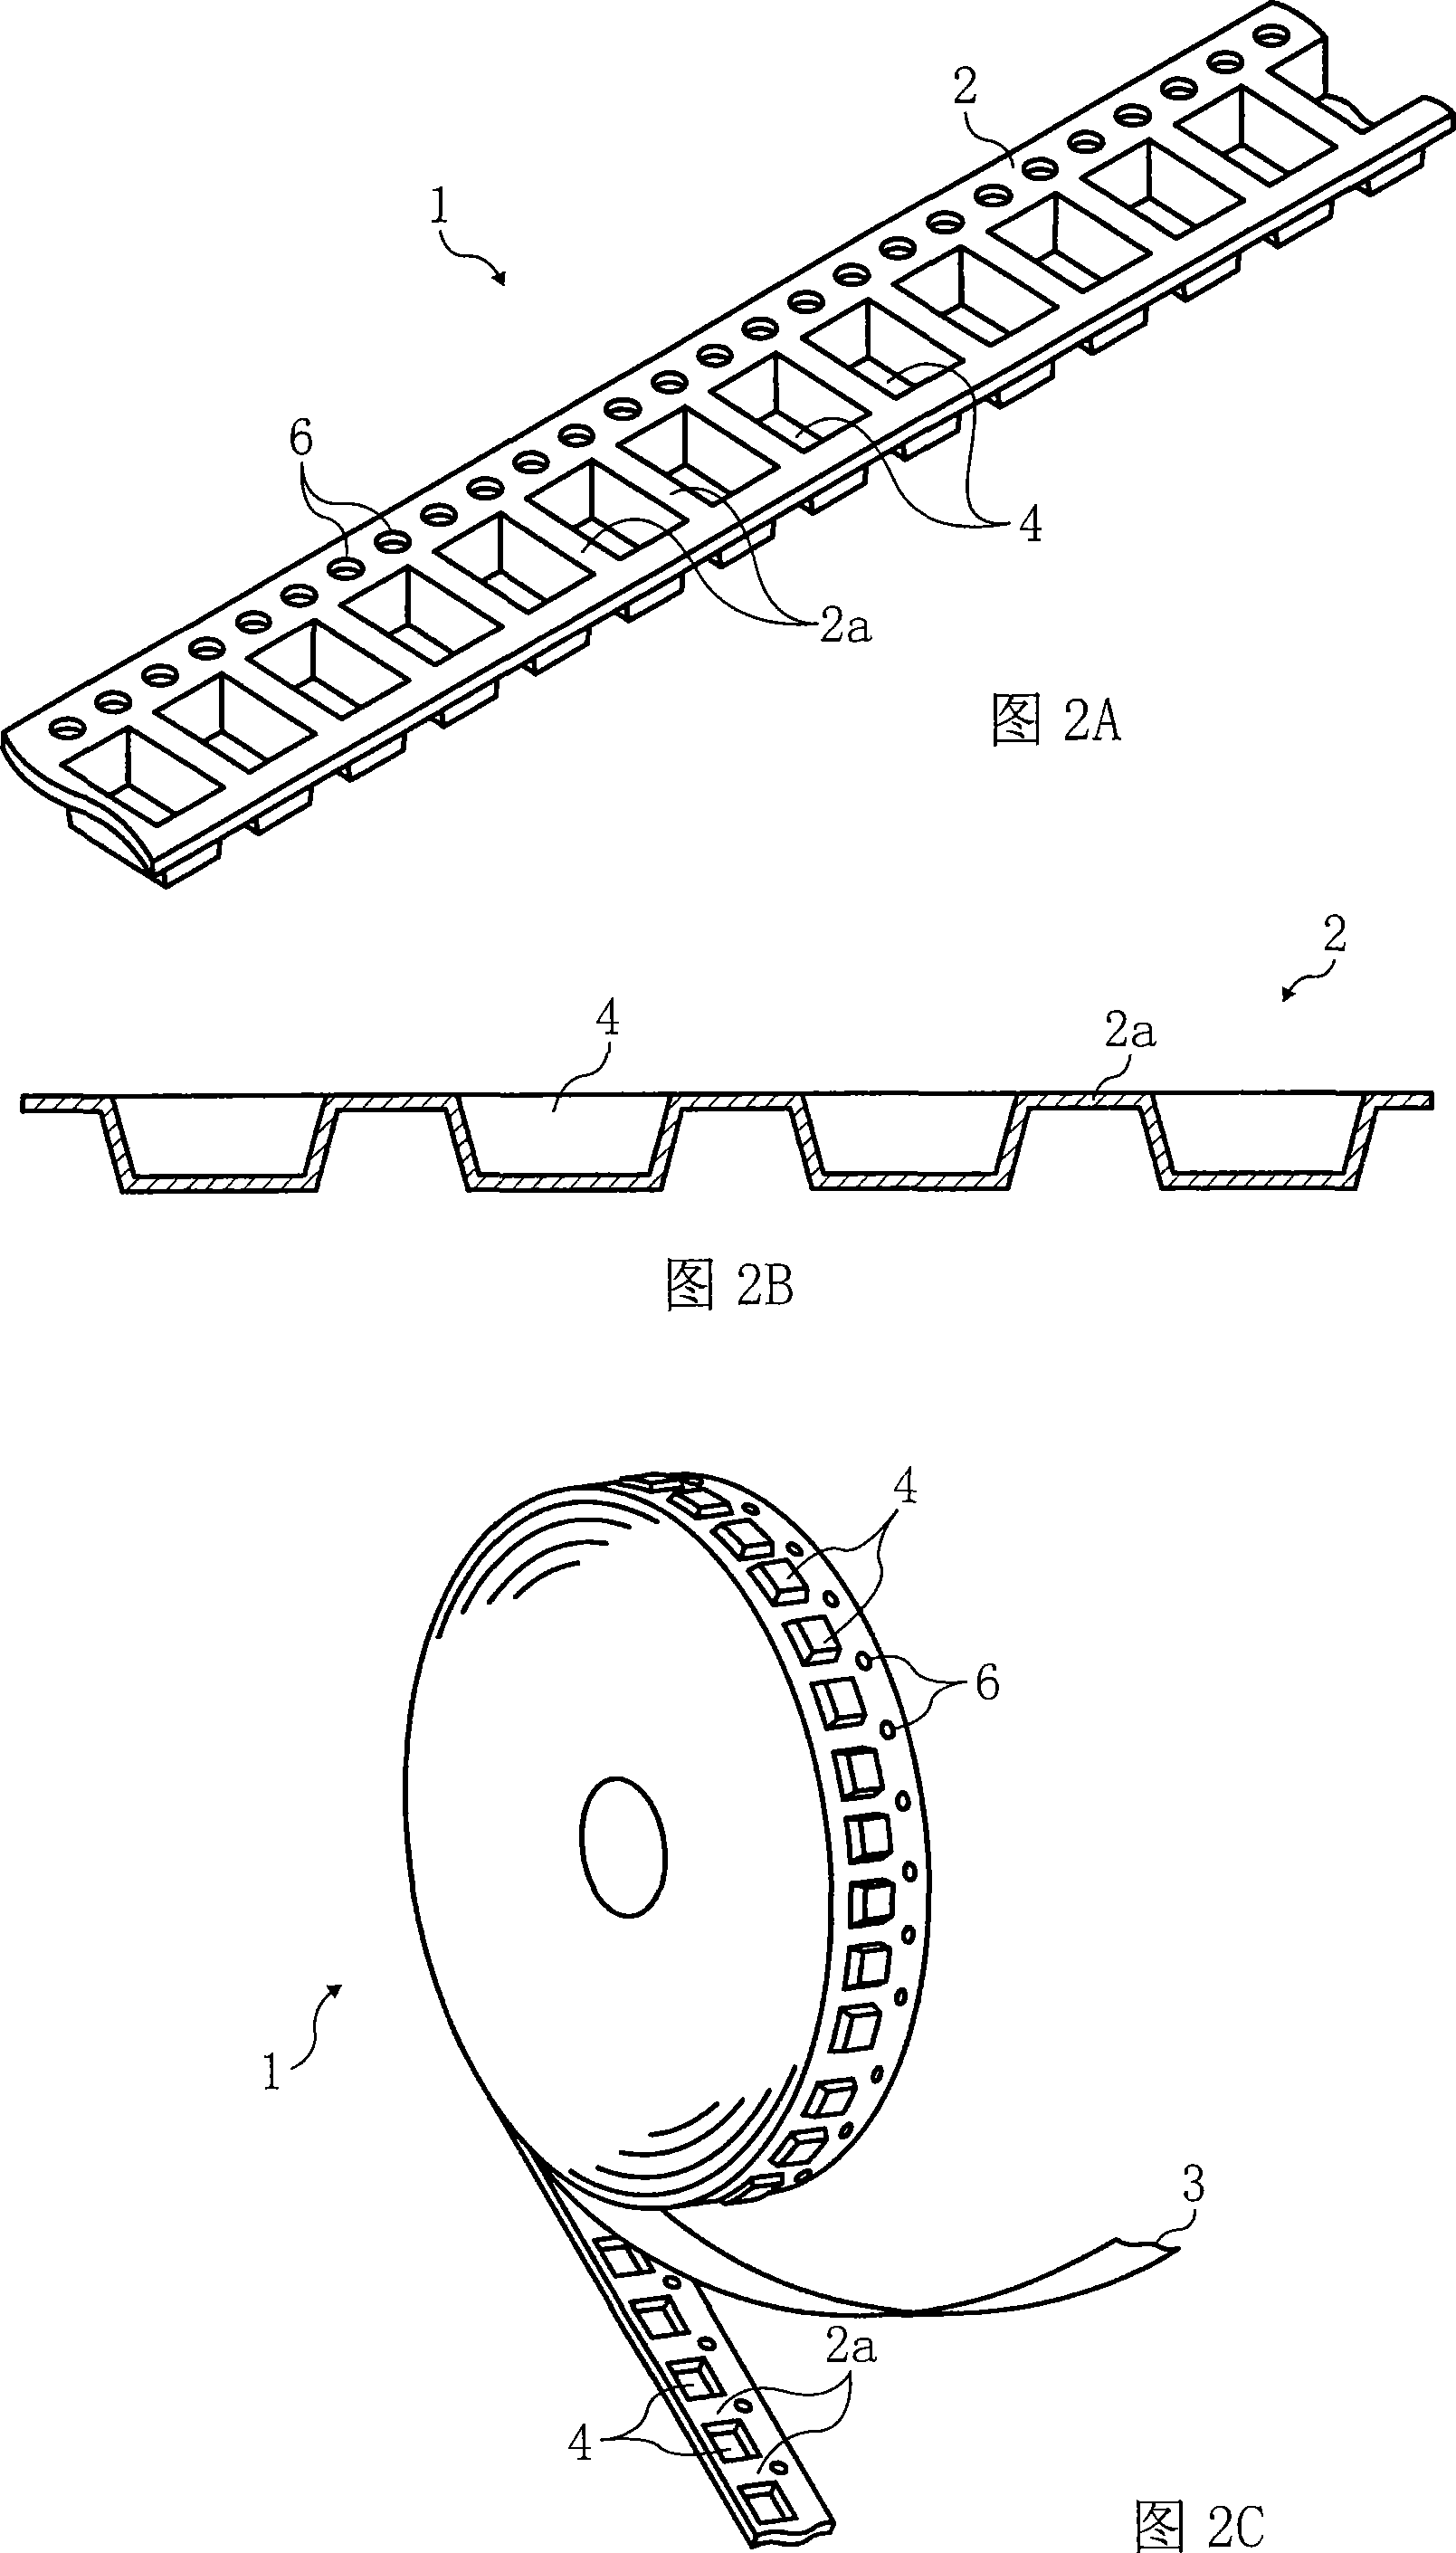 Conveying belt part, method for making belt data for conveying belt part and method for making conveying belt part